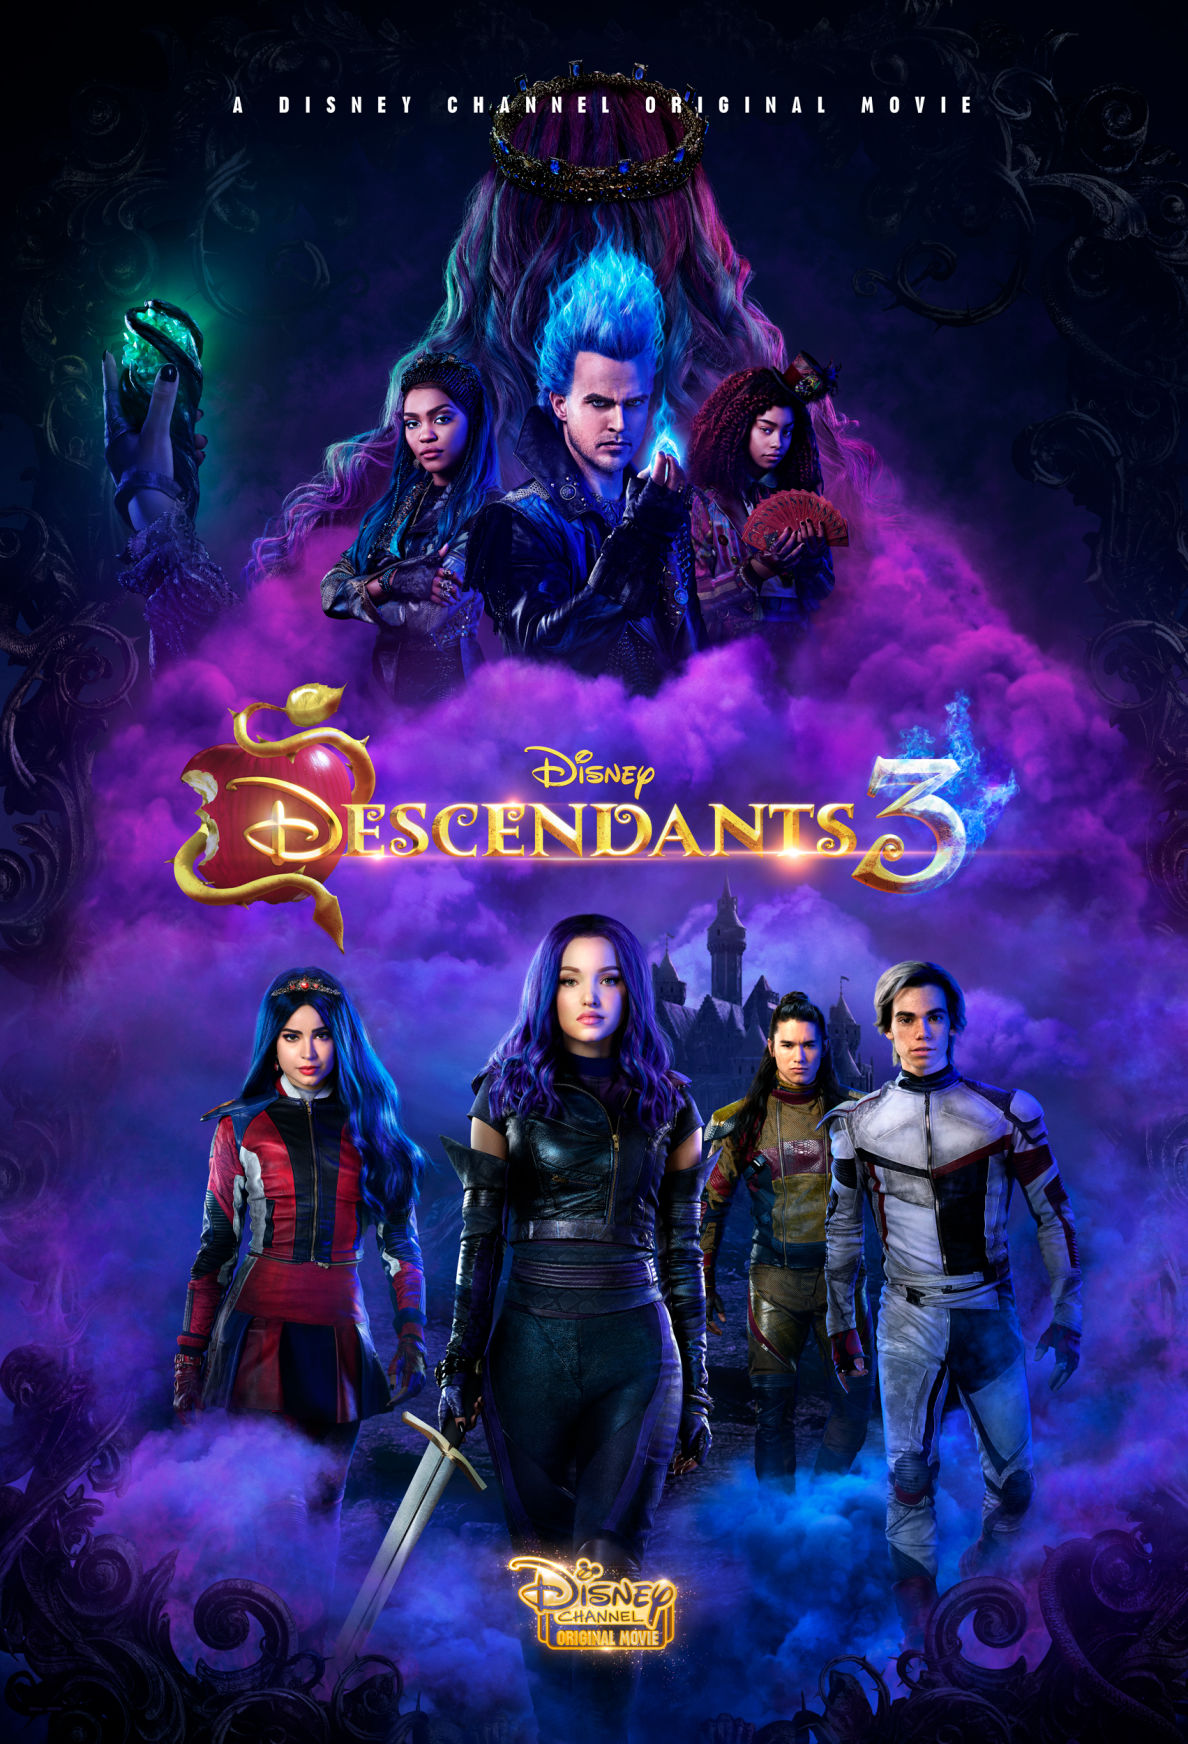 ดูหนังออนไลน์ Descendants 3 รวมพลทายาทตัวร้าย 3 (2019) พากย์ไทย